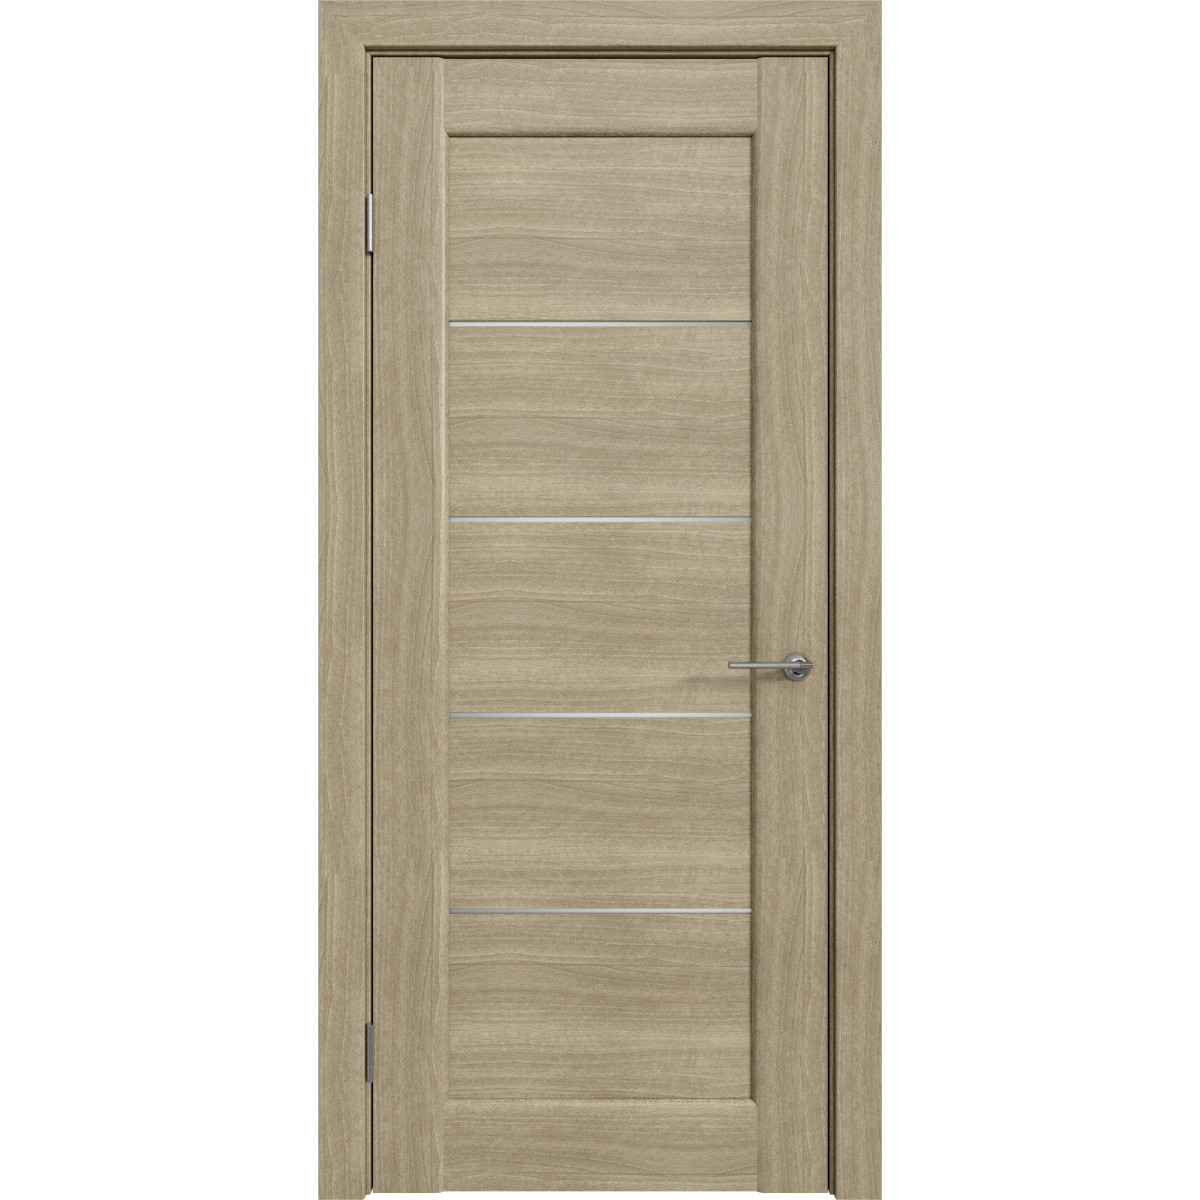 Дверь межкомнатная остеклённая Дельта горизонтальная 70x200 см, ПВХ, цвет ольха серебряная, с фурнитурой